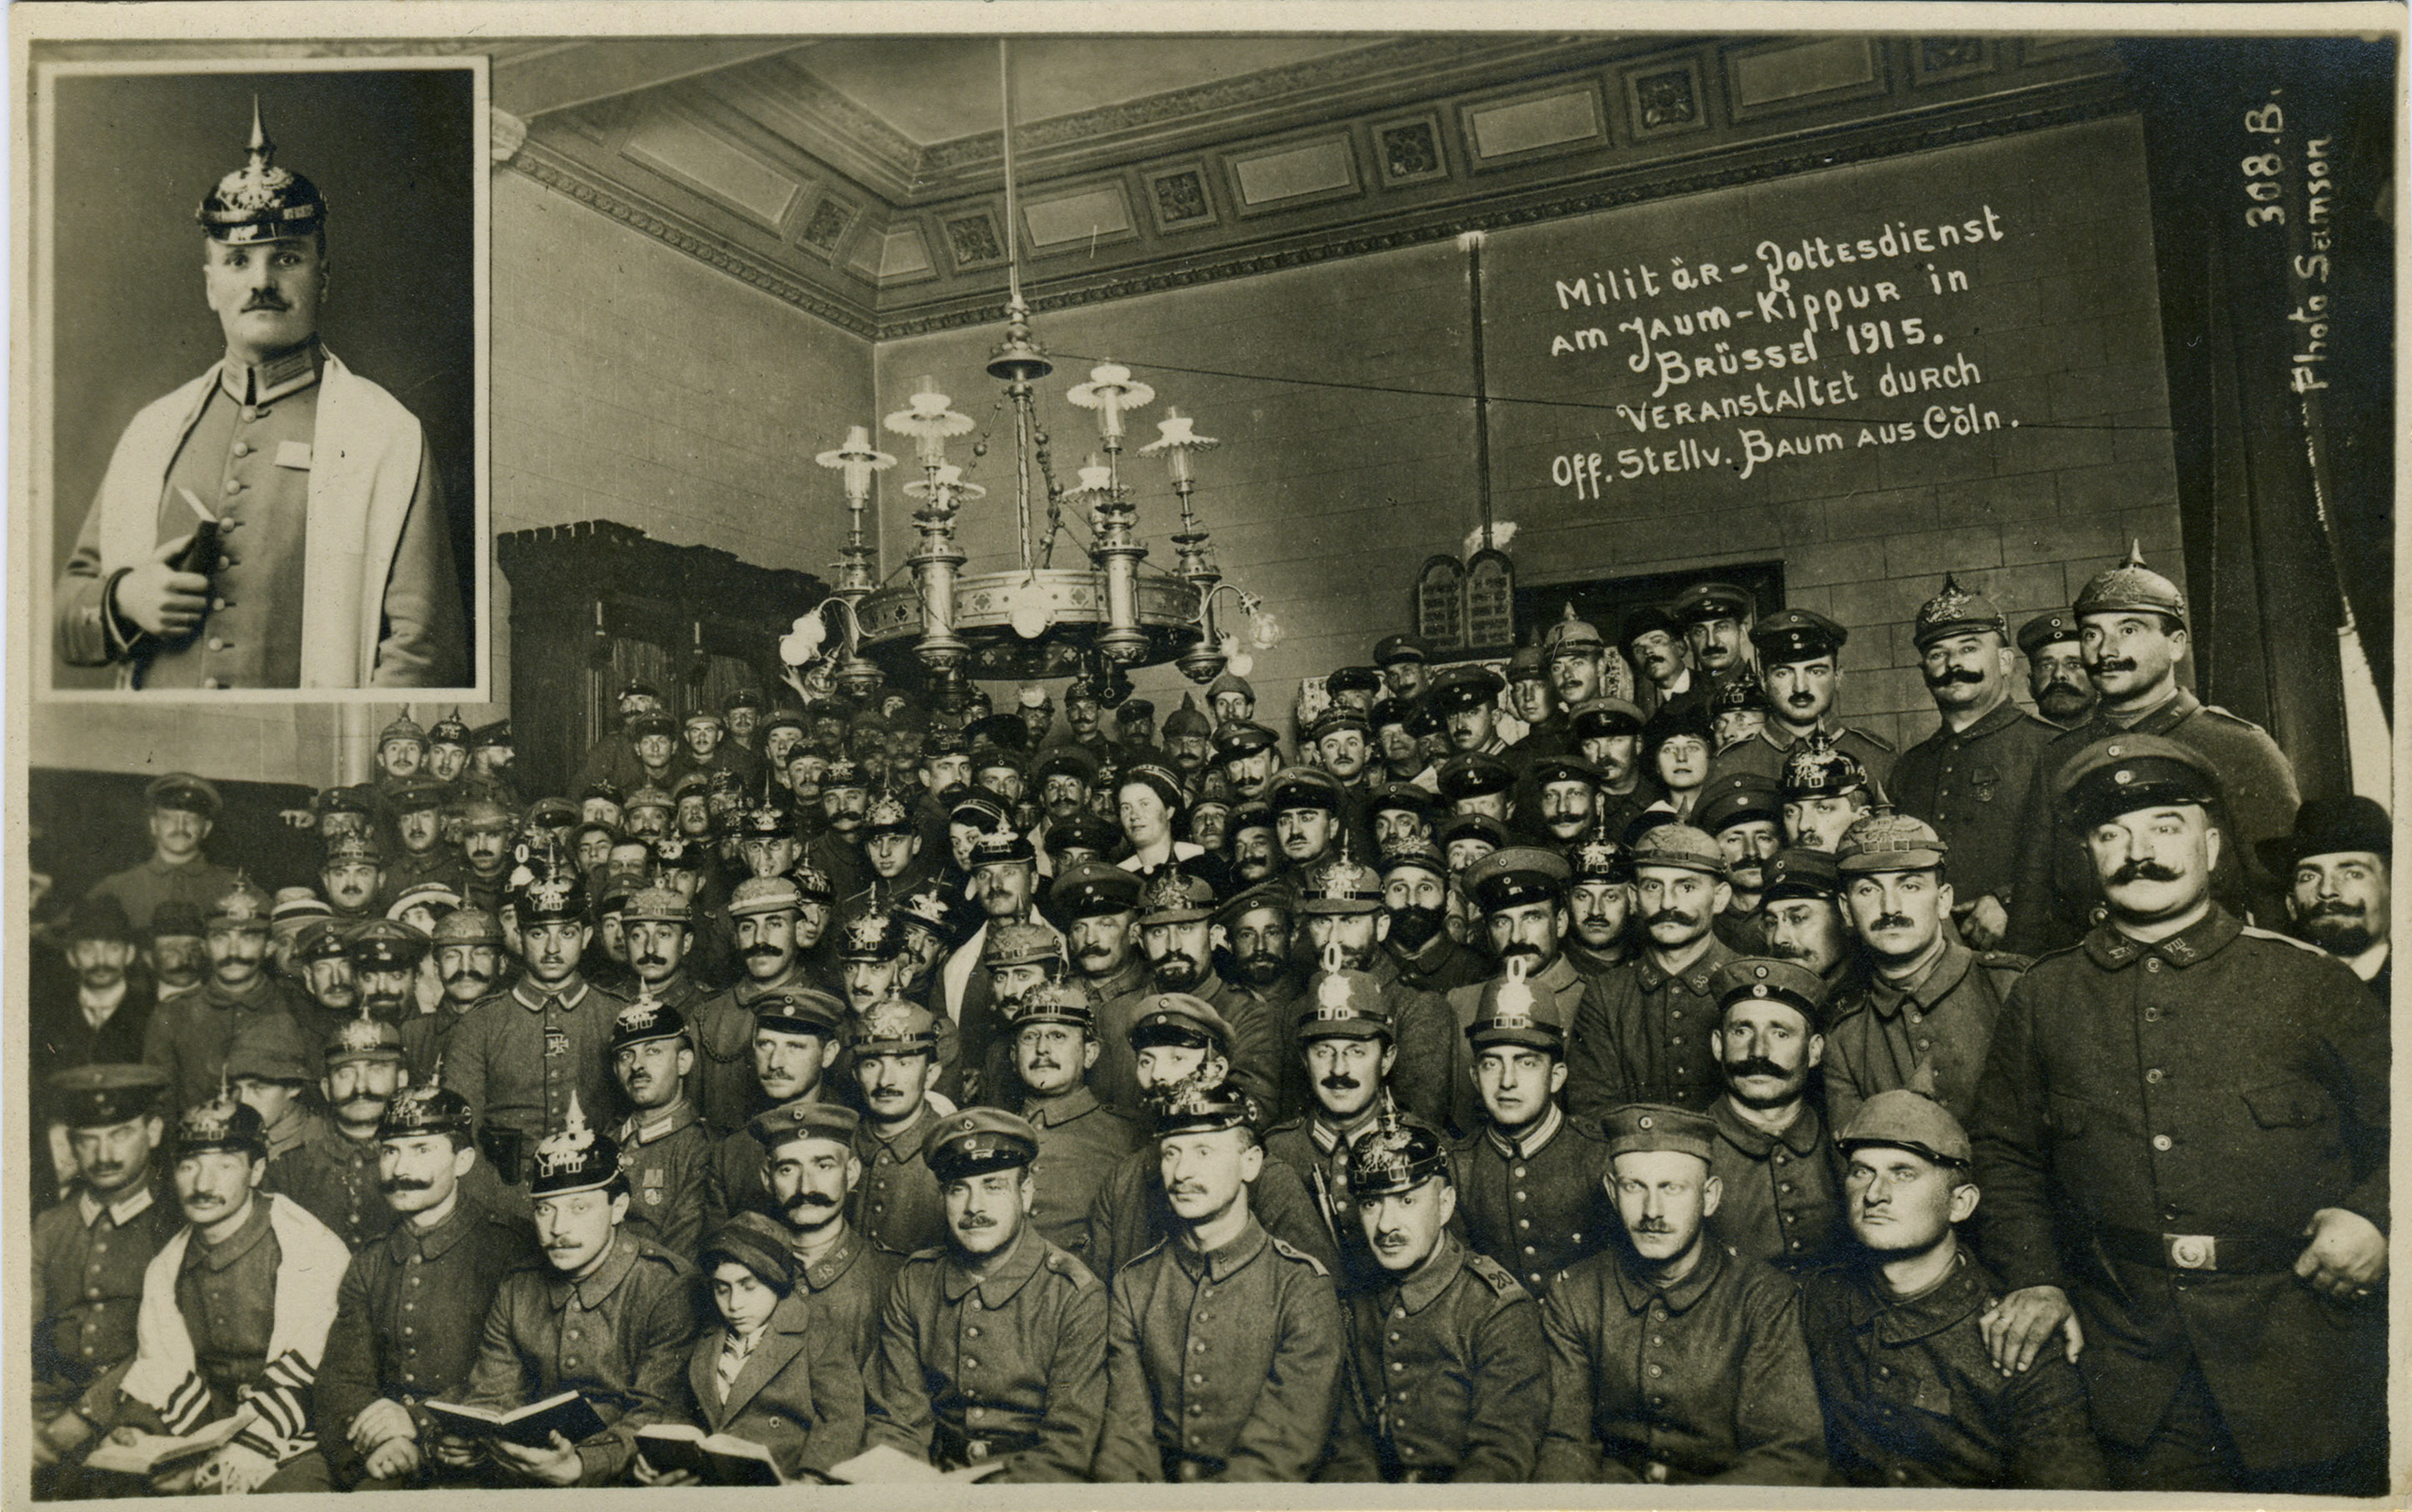 [Postkarte: Militär-Gottesdienst am Jaum-Kippur in Brüssel 1915]